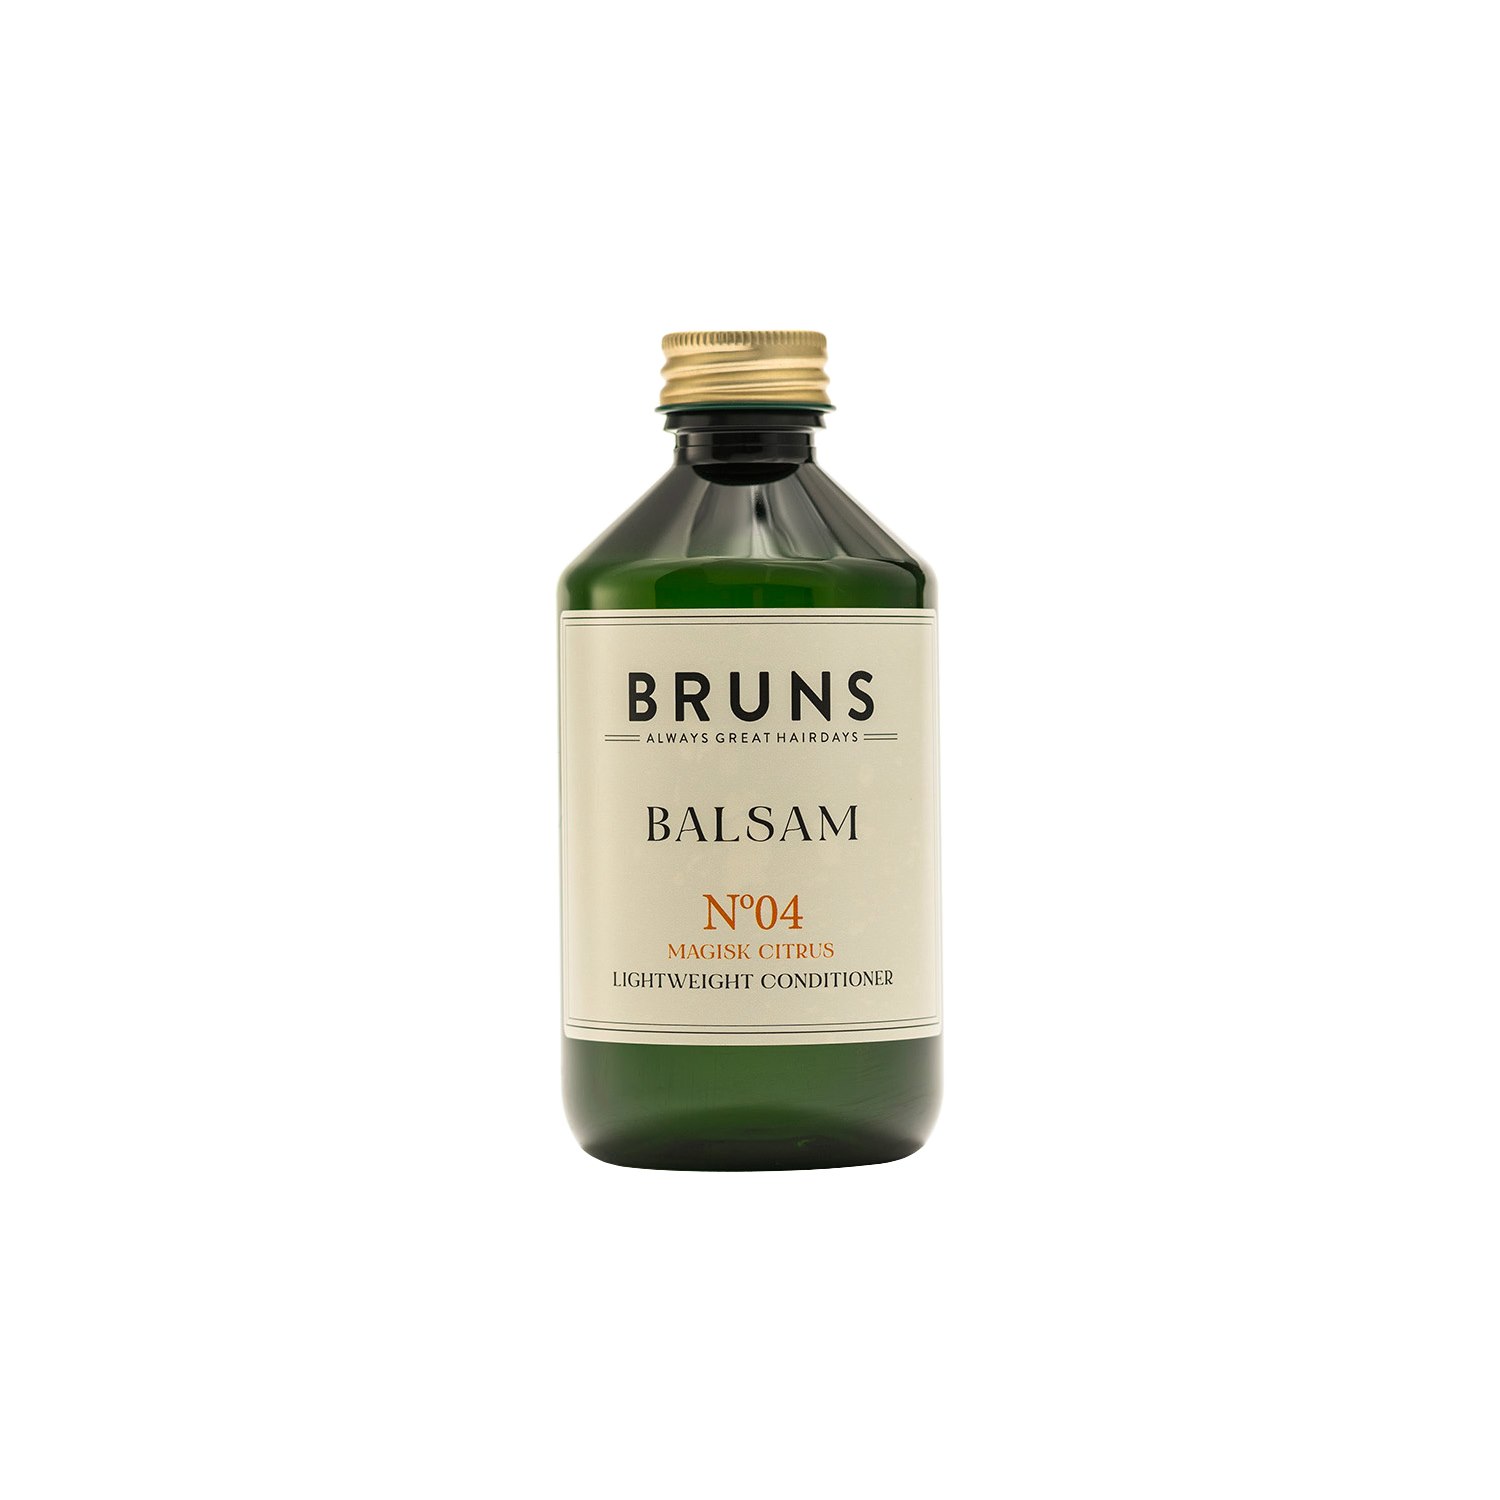 BRUNS Balsam Nº04 - Magisk Citrus 300 ml